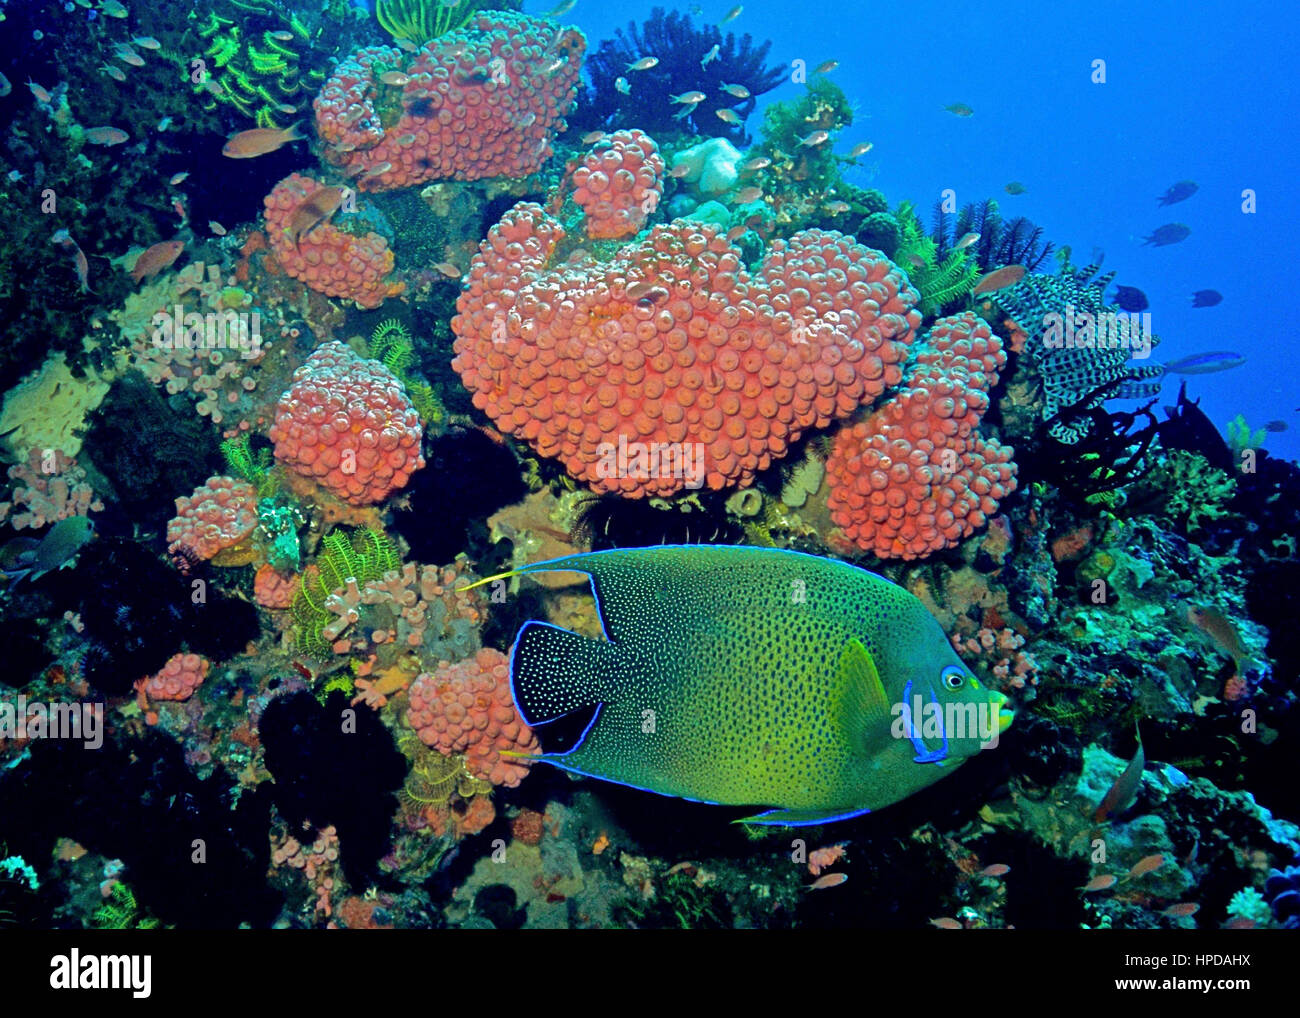 Un corano angelfish (Pomacanthus semicirculatus) nuoto passato una colorata barriera corallina con molti coralli di lampone (Pocillopora damicornis). Bali, Indonesia. Foto Stock